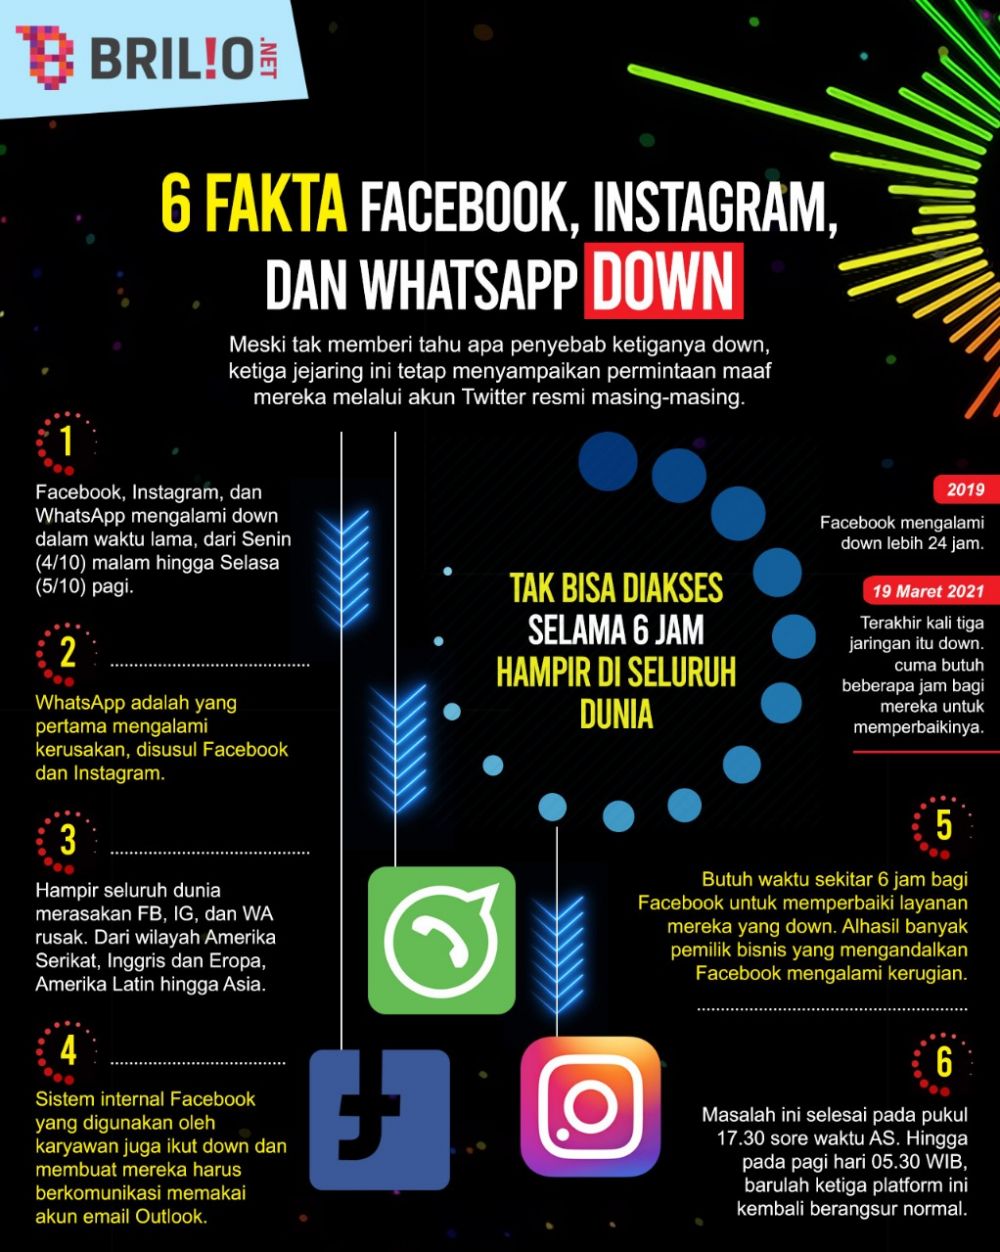 Ini penyebab Facebook, Instagram dan WhatsApp down